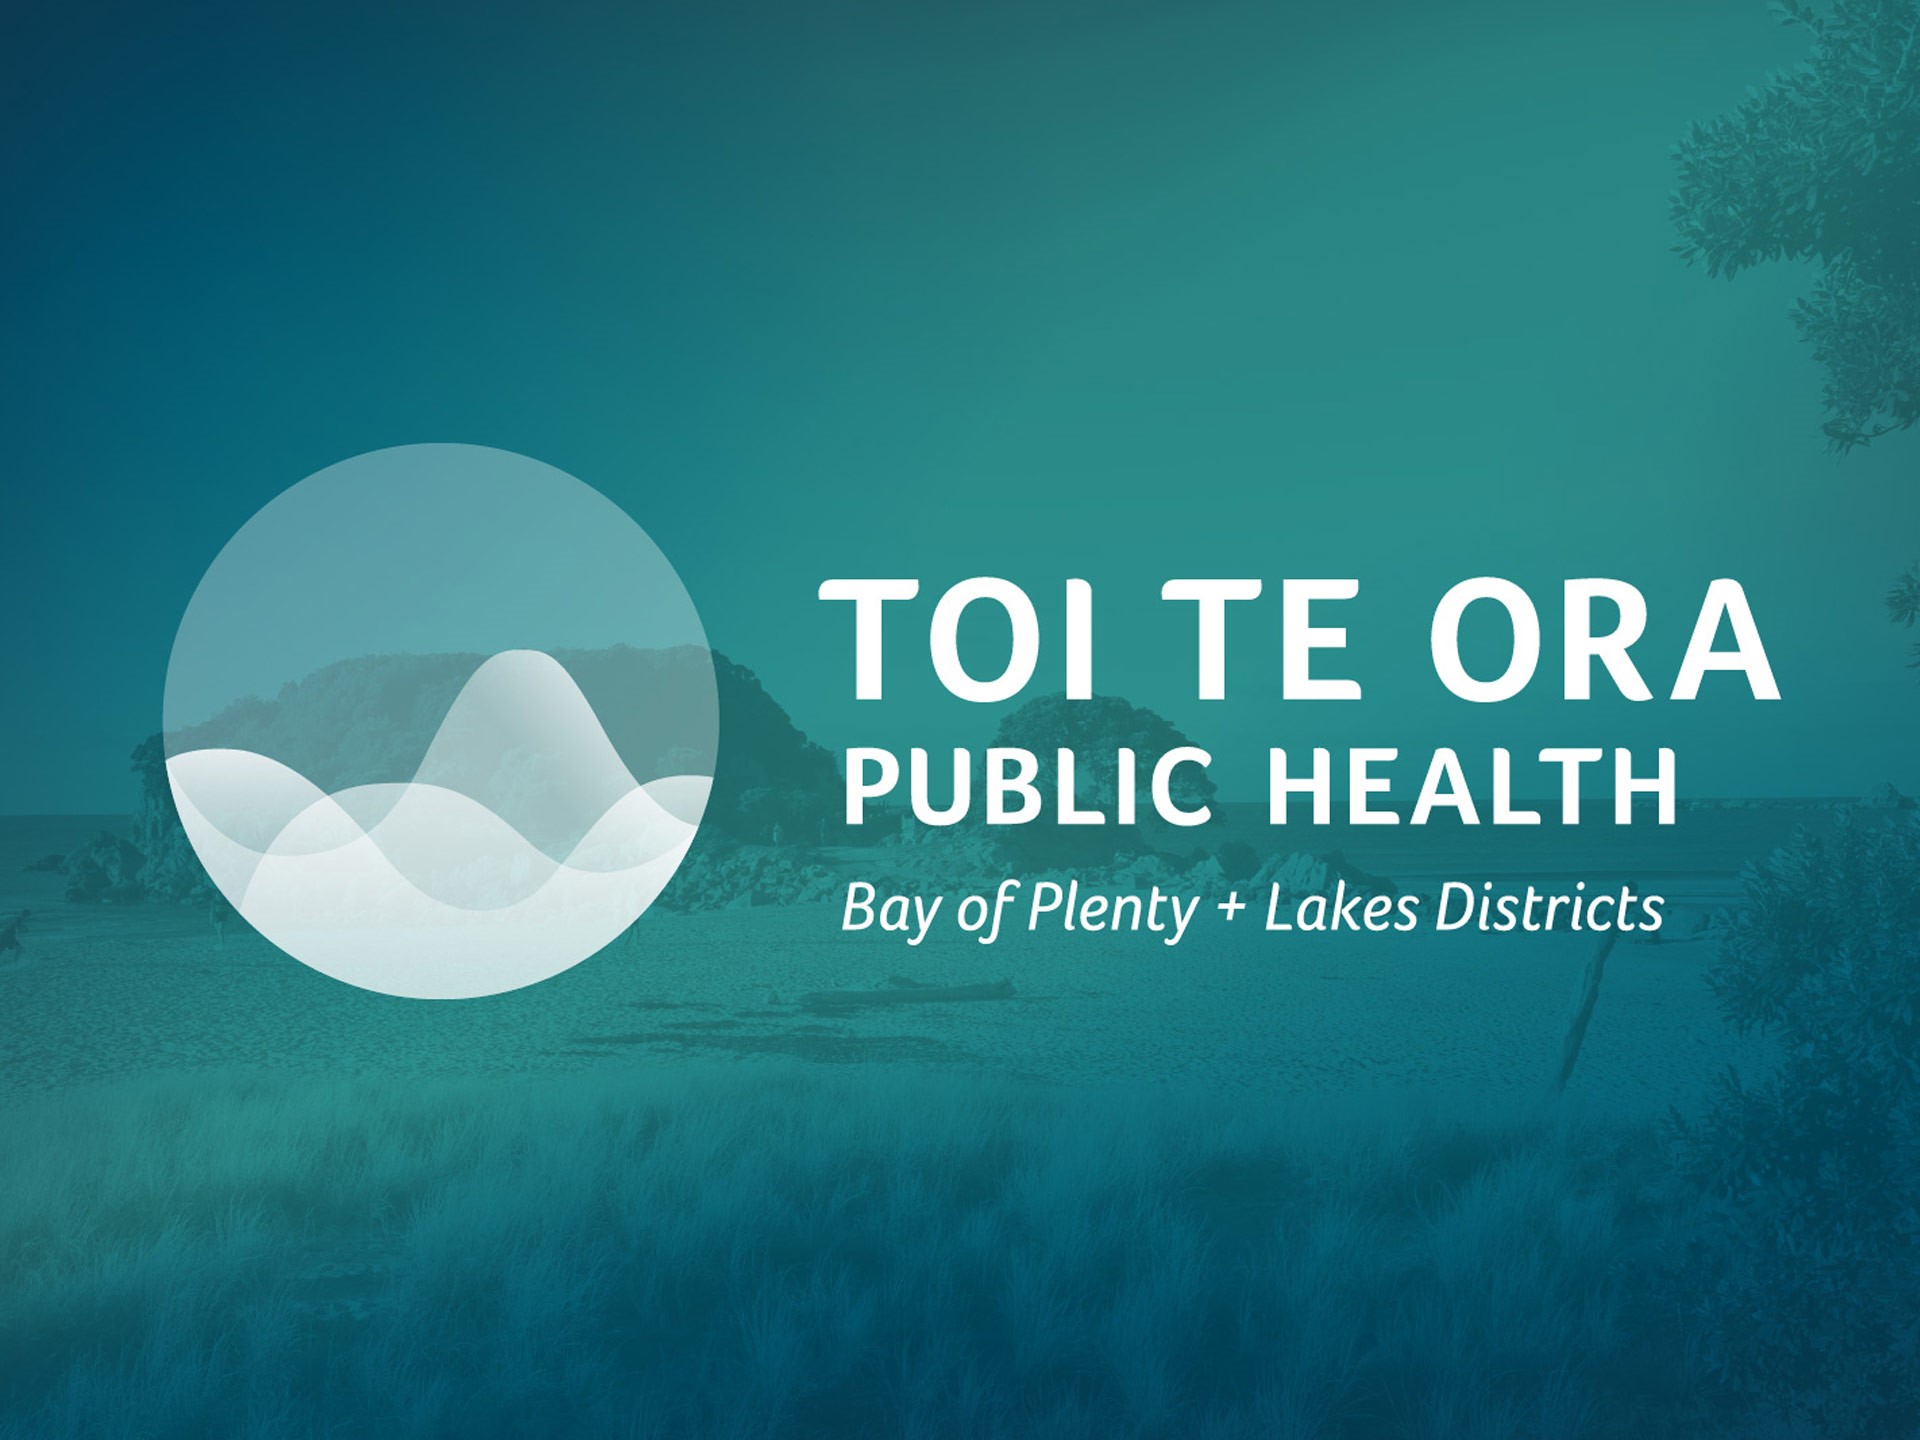 Health warnings issued for Lake Ohakuri, Lake Maraetai and Lake Whakamaru 9 November 2021